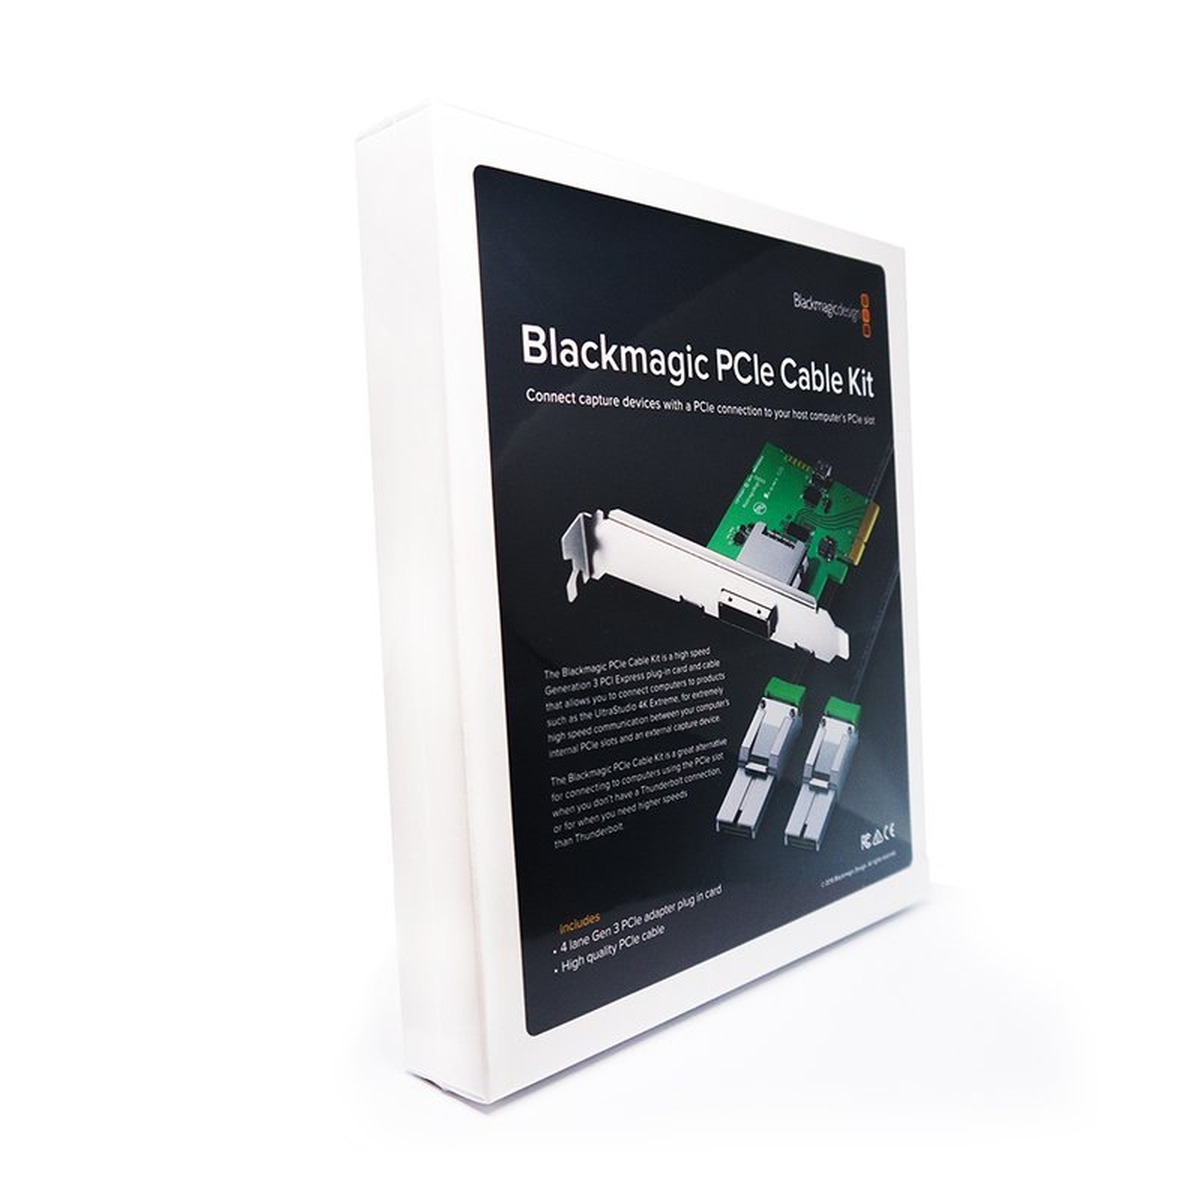 Blackmagic PCIE Cable Kit